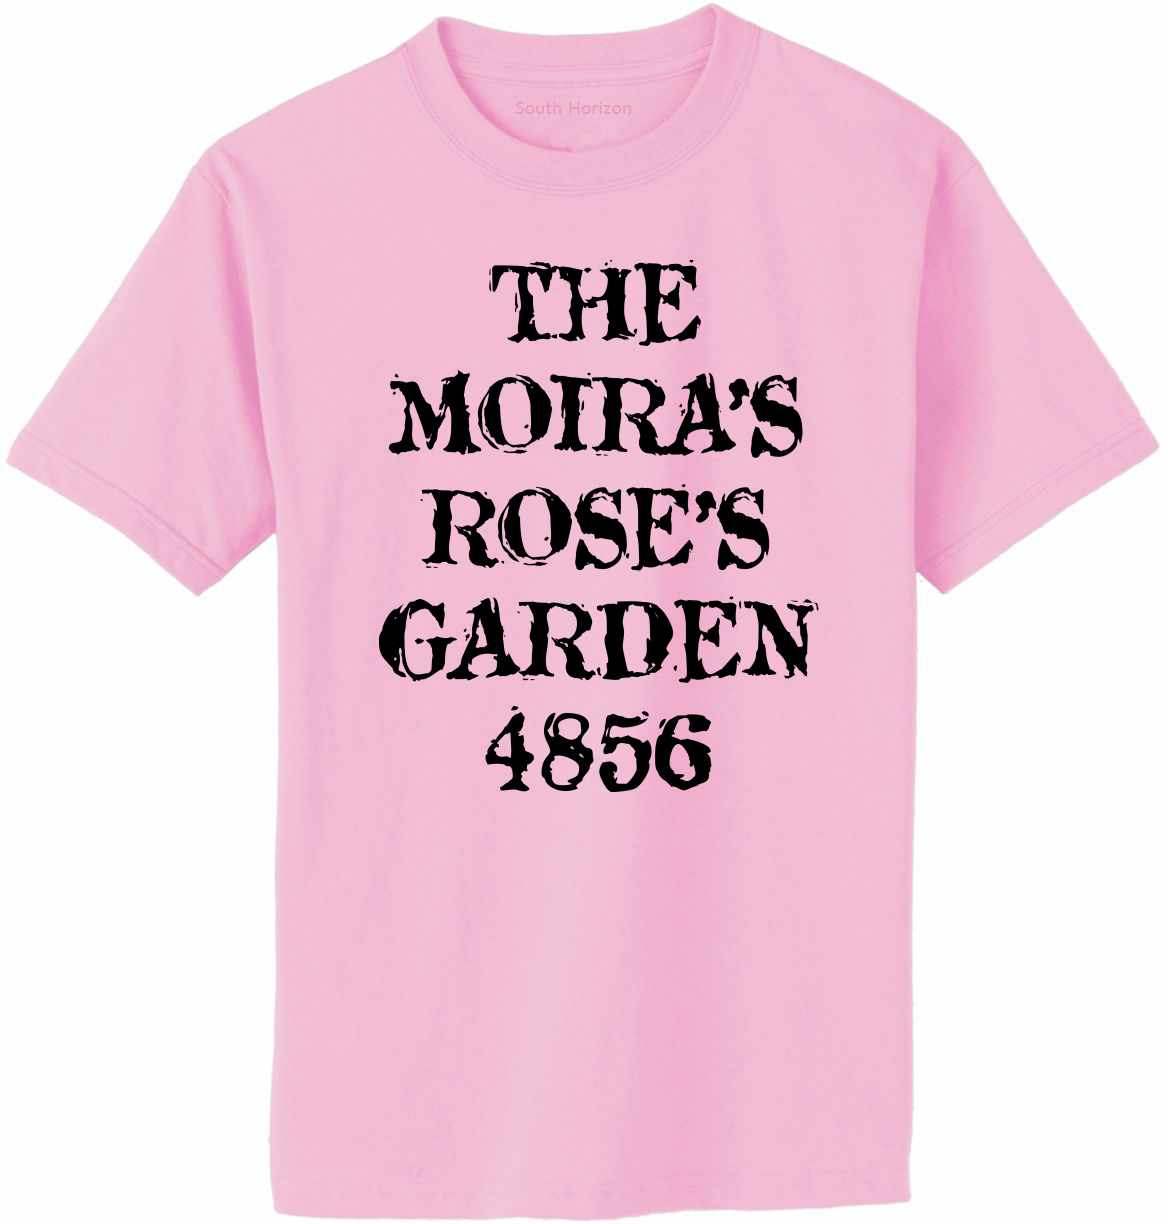 The Moiras Roses Garden 4856 Adult T-Shirt